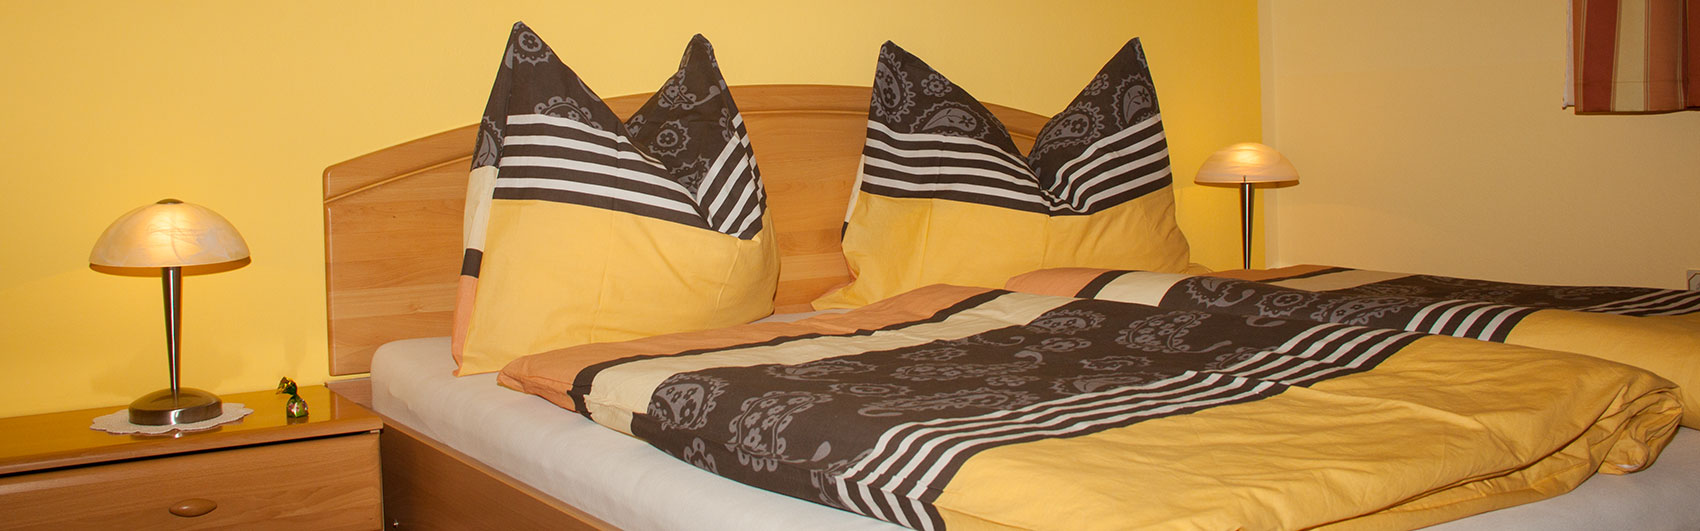 Blick auf das frisch bezogene Doppelbett mit Nachtkästchen und Lampen.